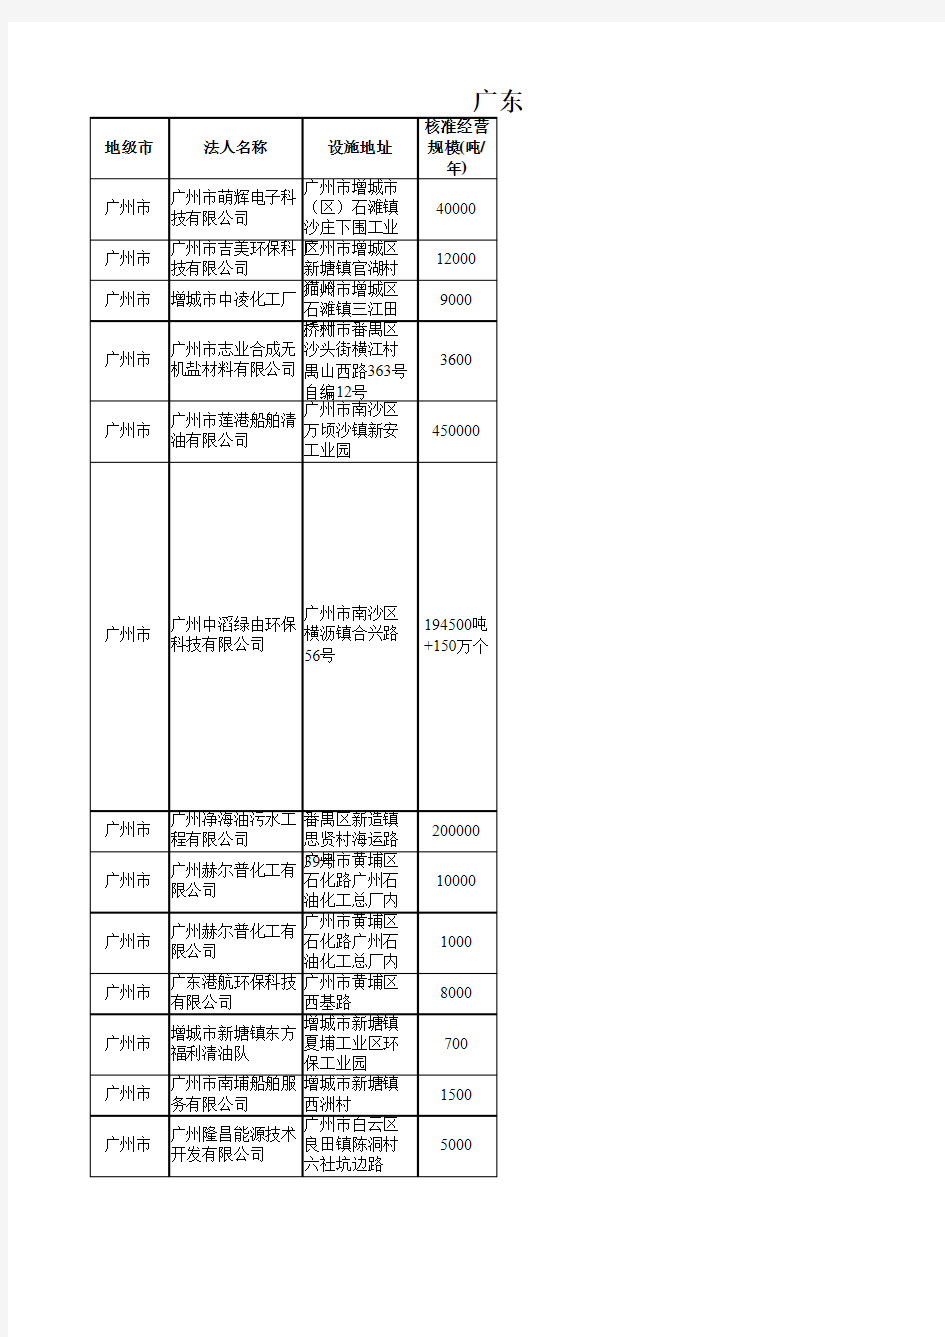 广东省生态环境厅危险废物经营许可证颁发情况(截止到2018年10月31日)